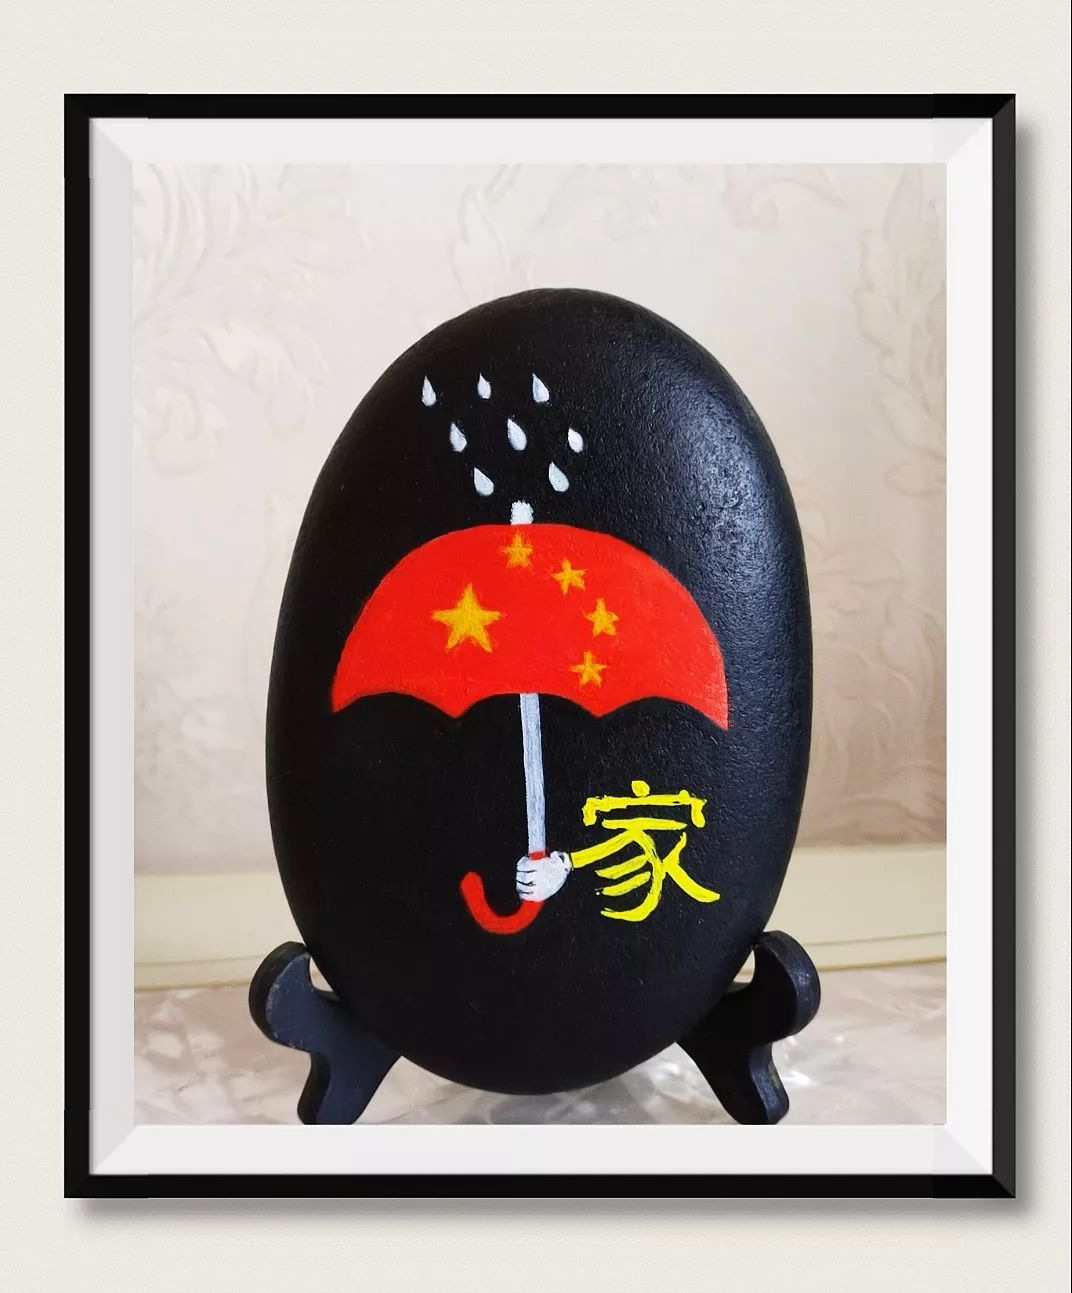 艺术天地泗县教师小小石头画出对祖国的炽爱之情堪称艺术珍品